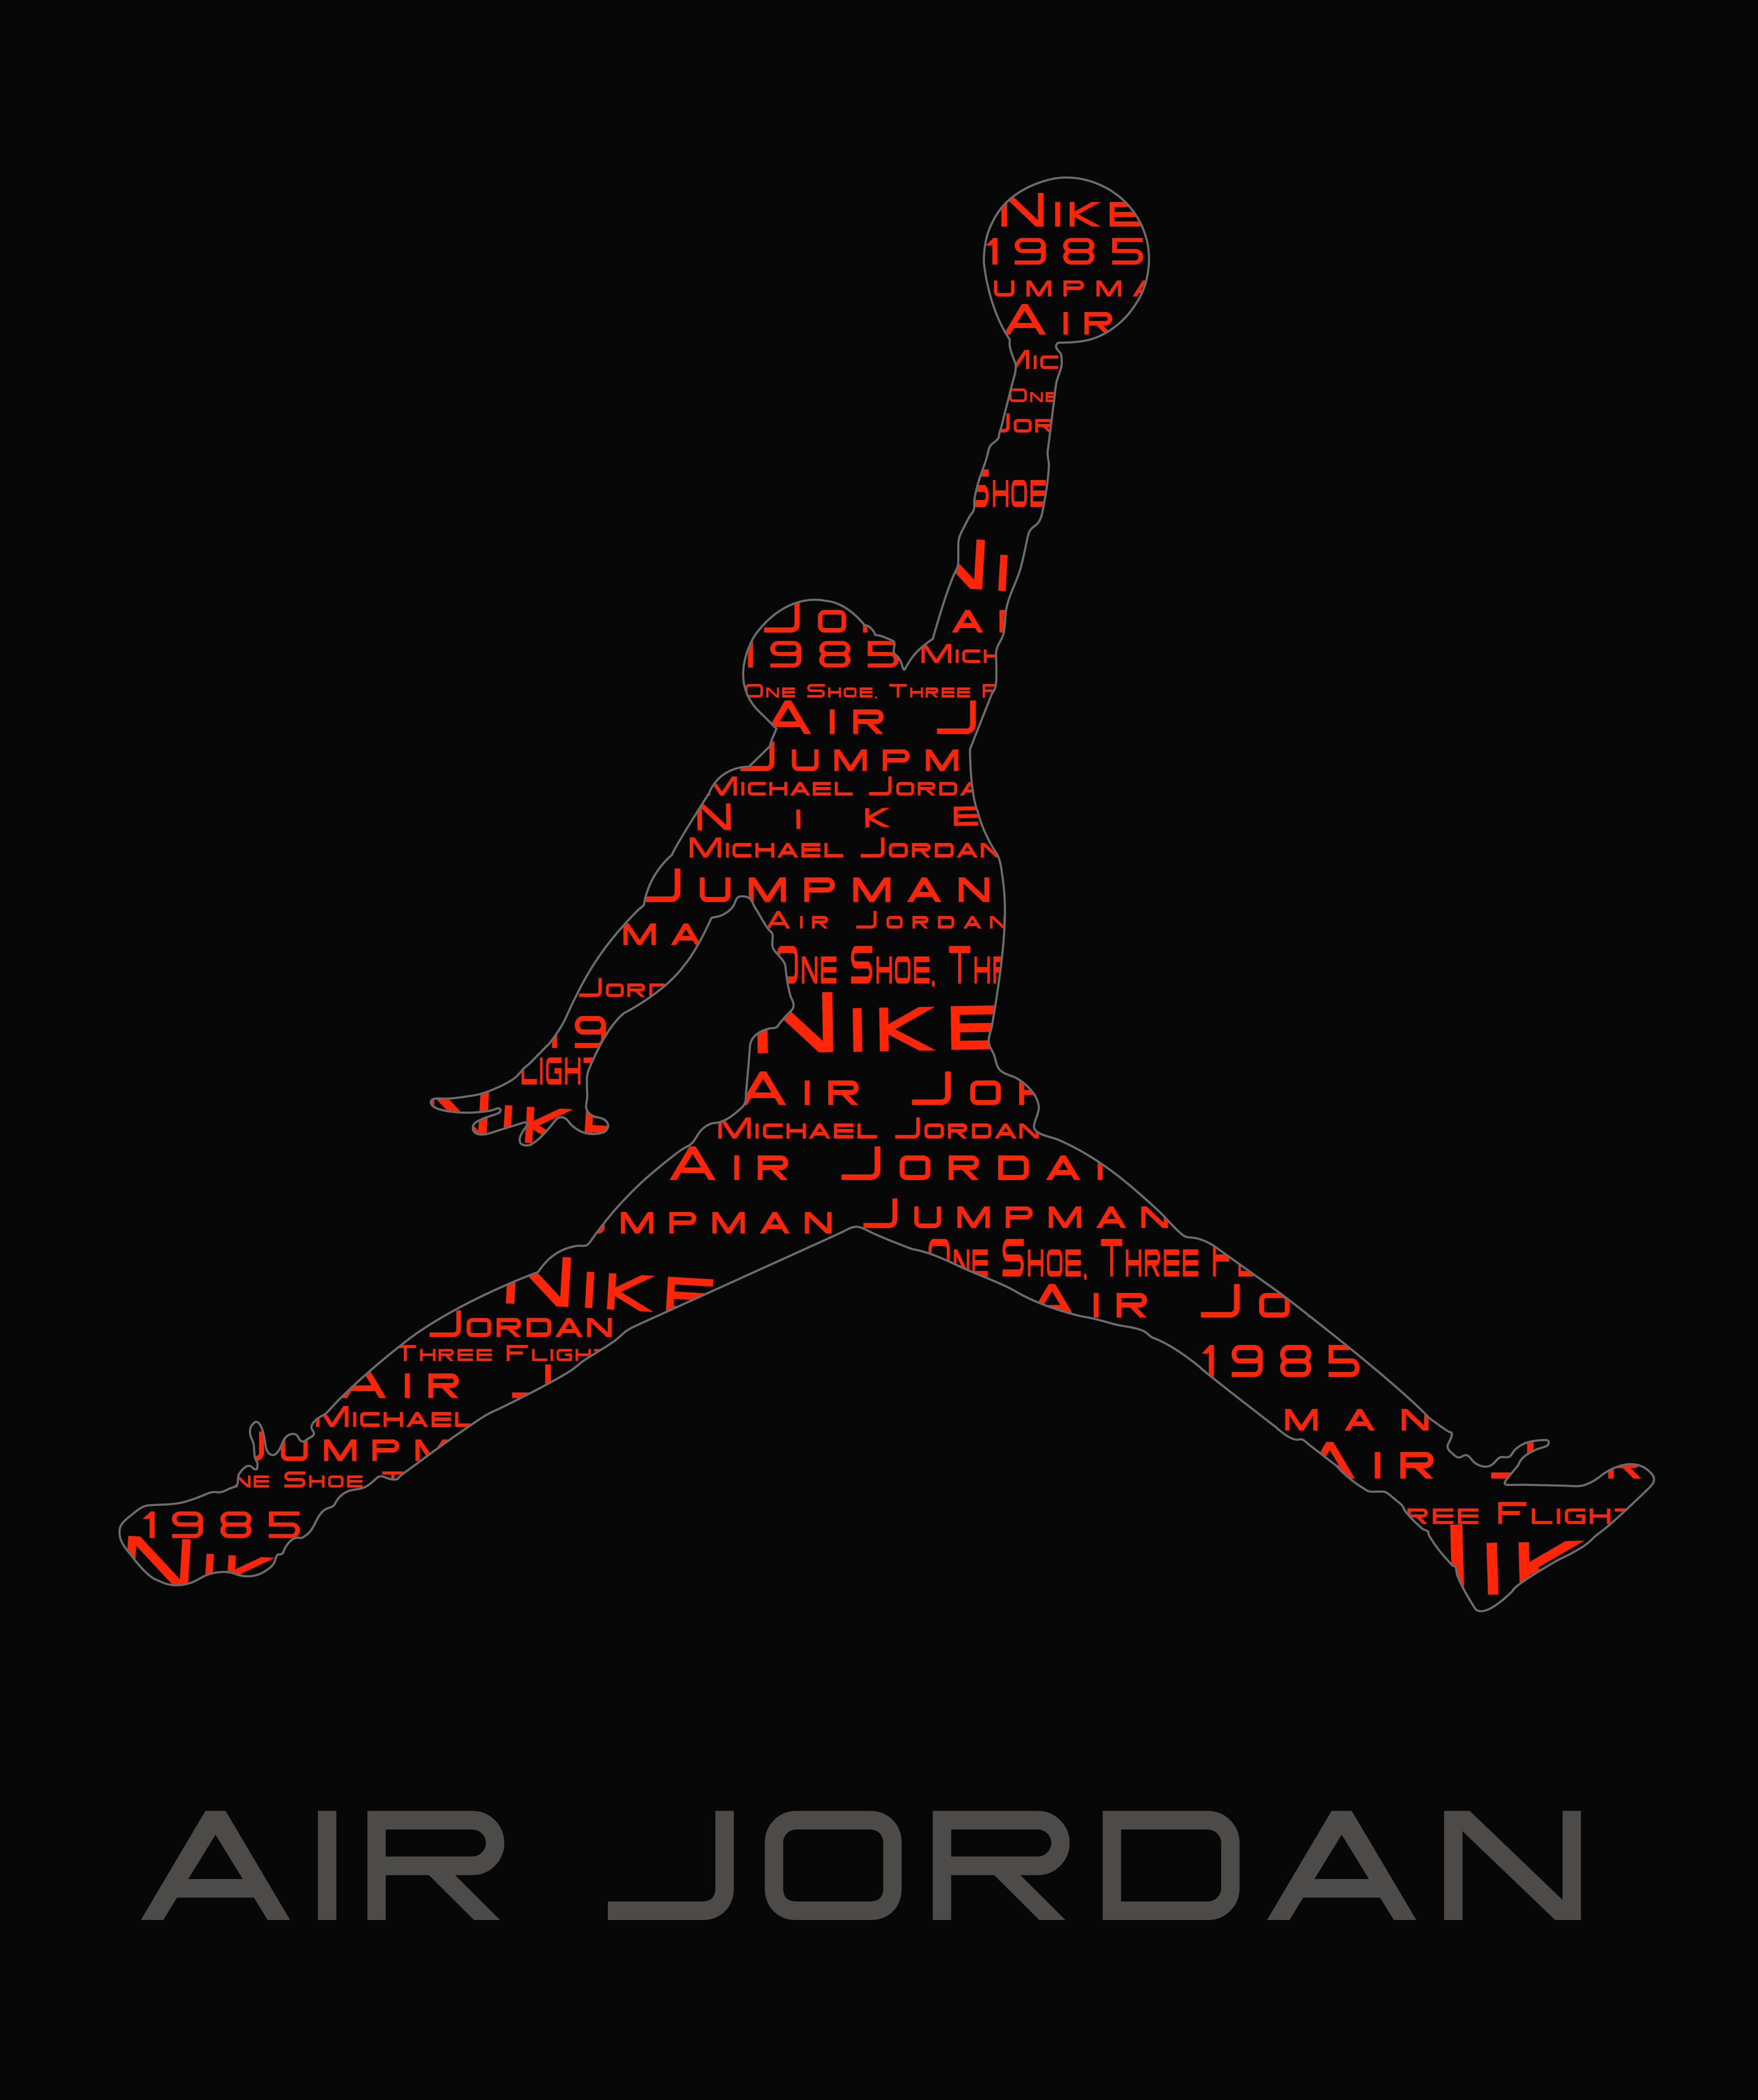 imagenes de jordan